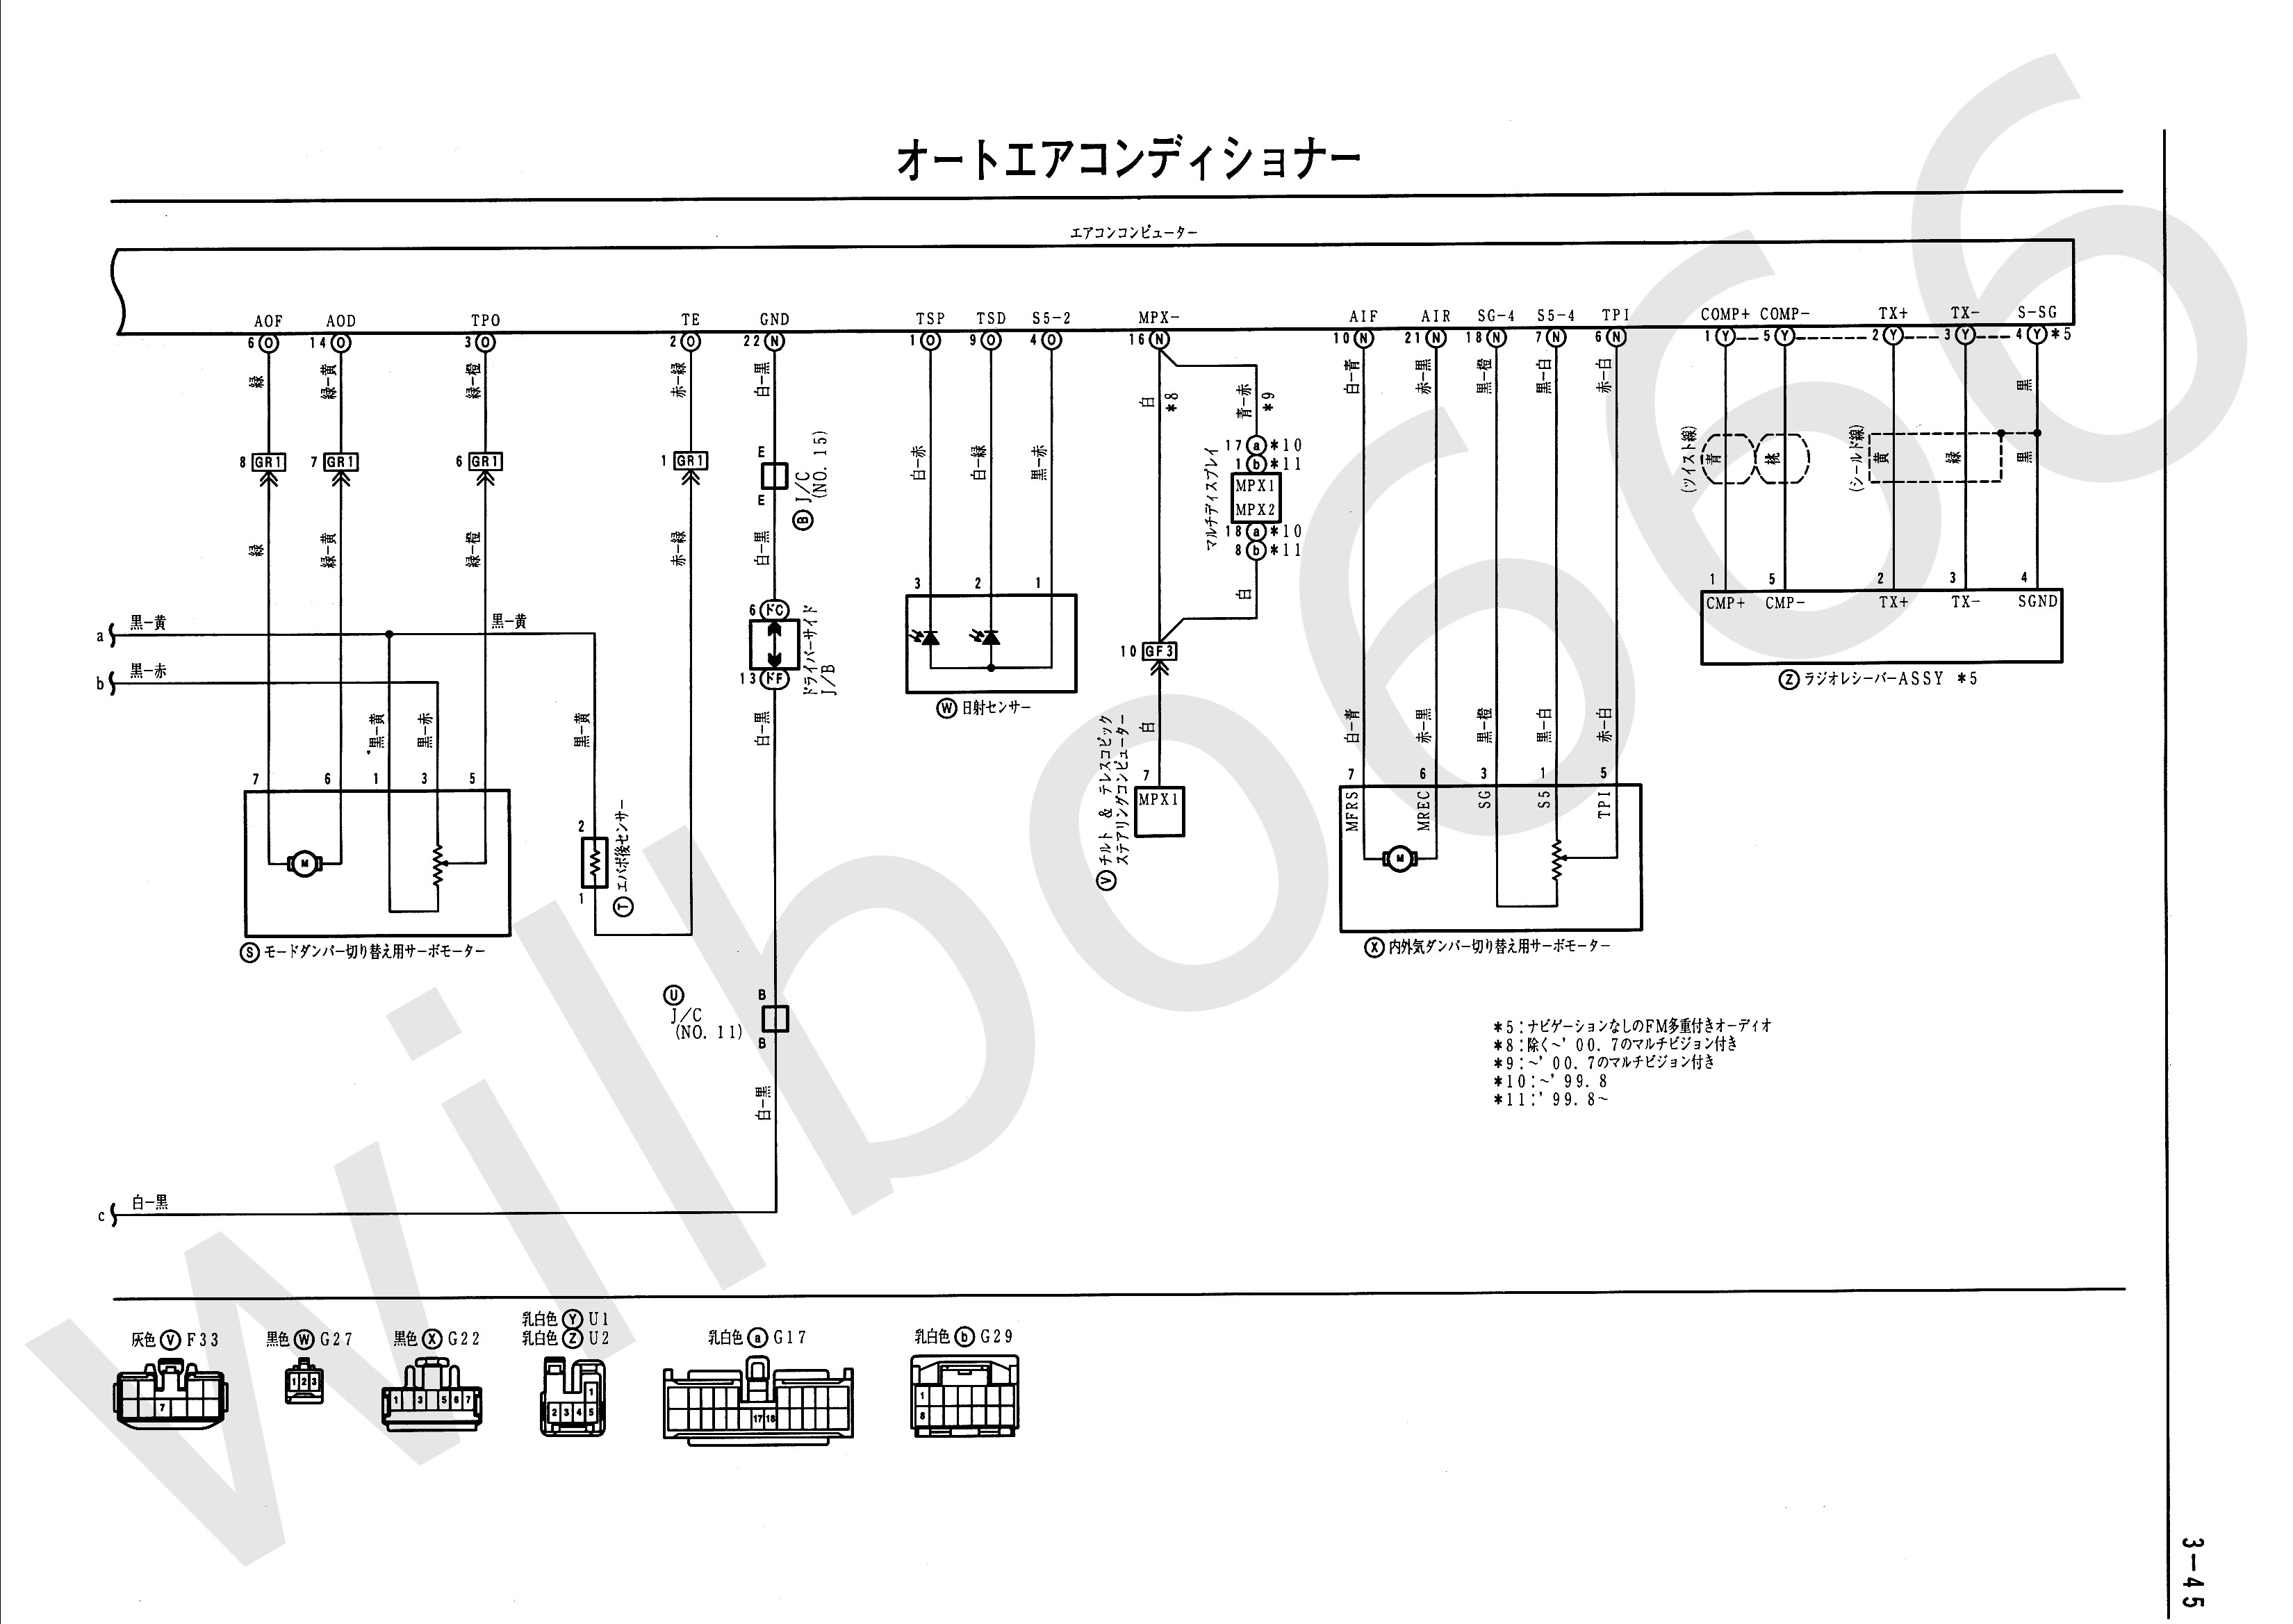 Dictator Engine Management Wiring Diagram Wilbo666 2jz Gte Vvti Jzs161 Aristo Engine Wiring Of Dictator Engine Management Wiring Diagram